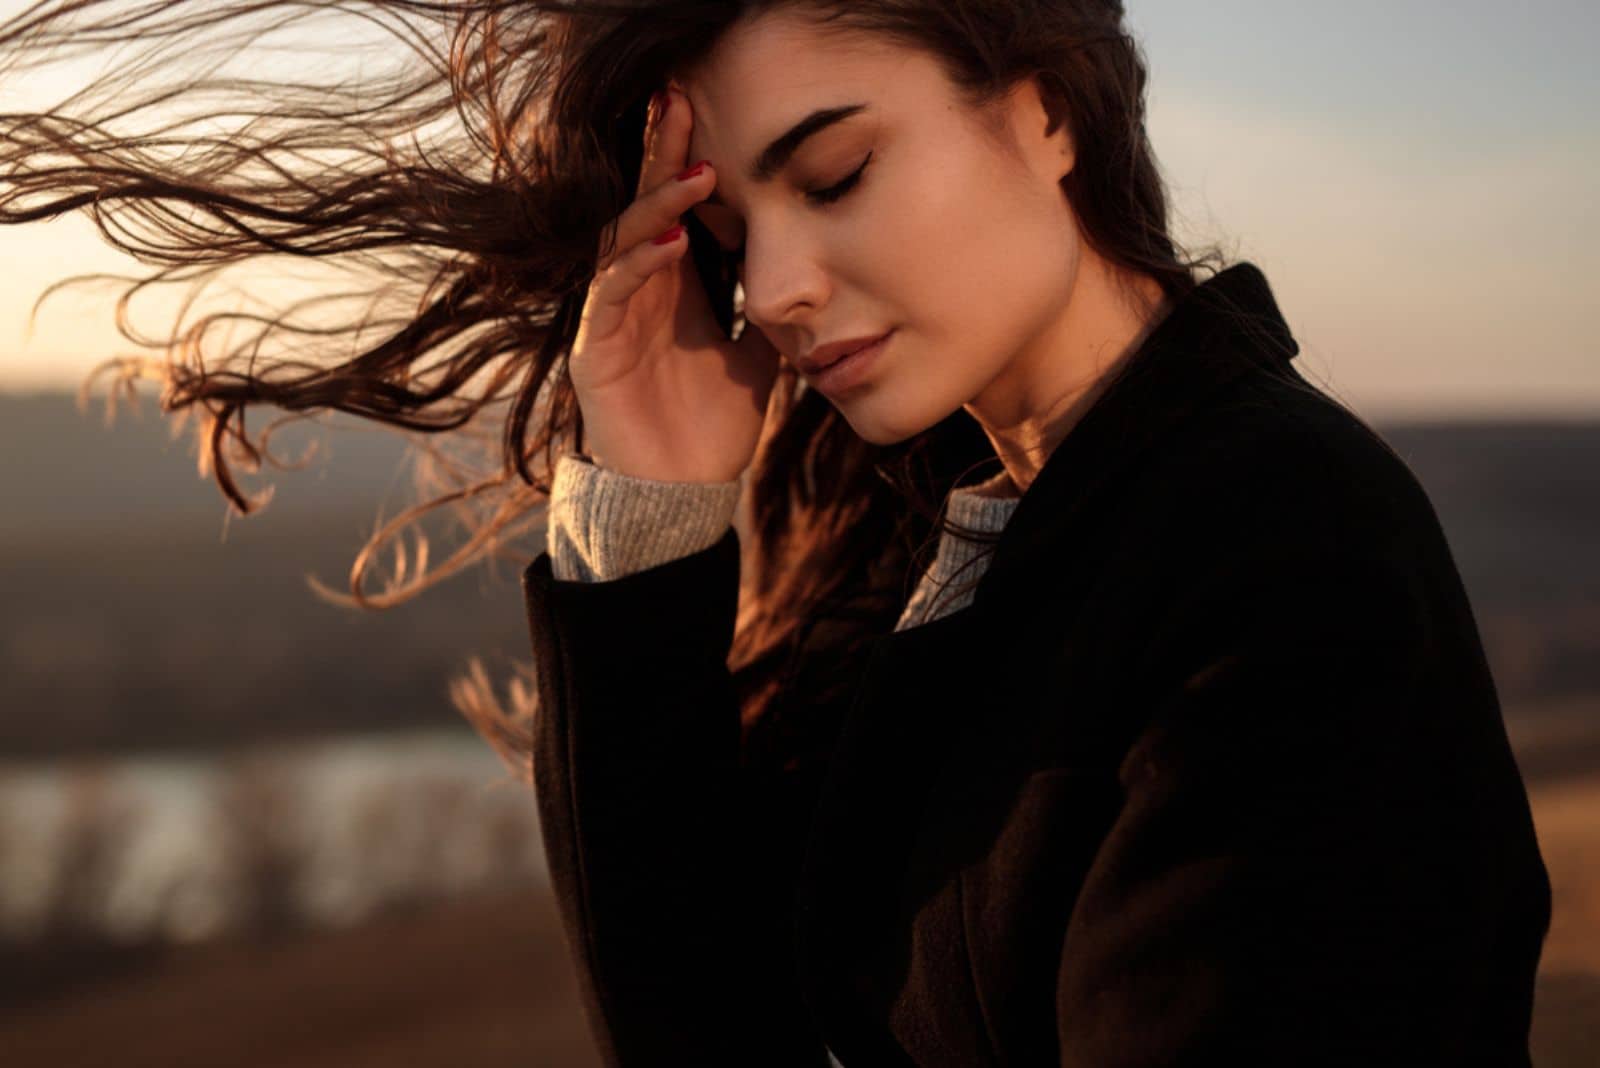 giovane donna sola ed esausta con i capelli lunghi che svolazzano al vento